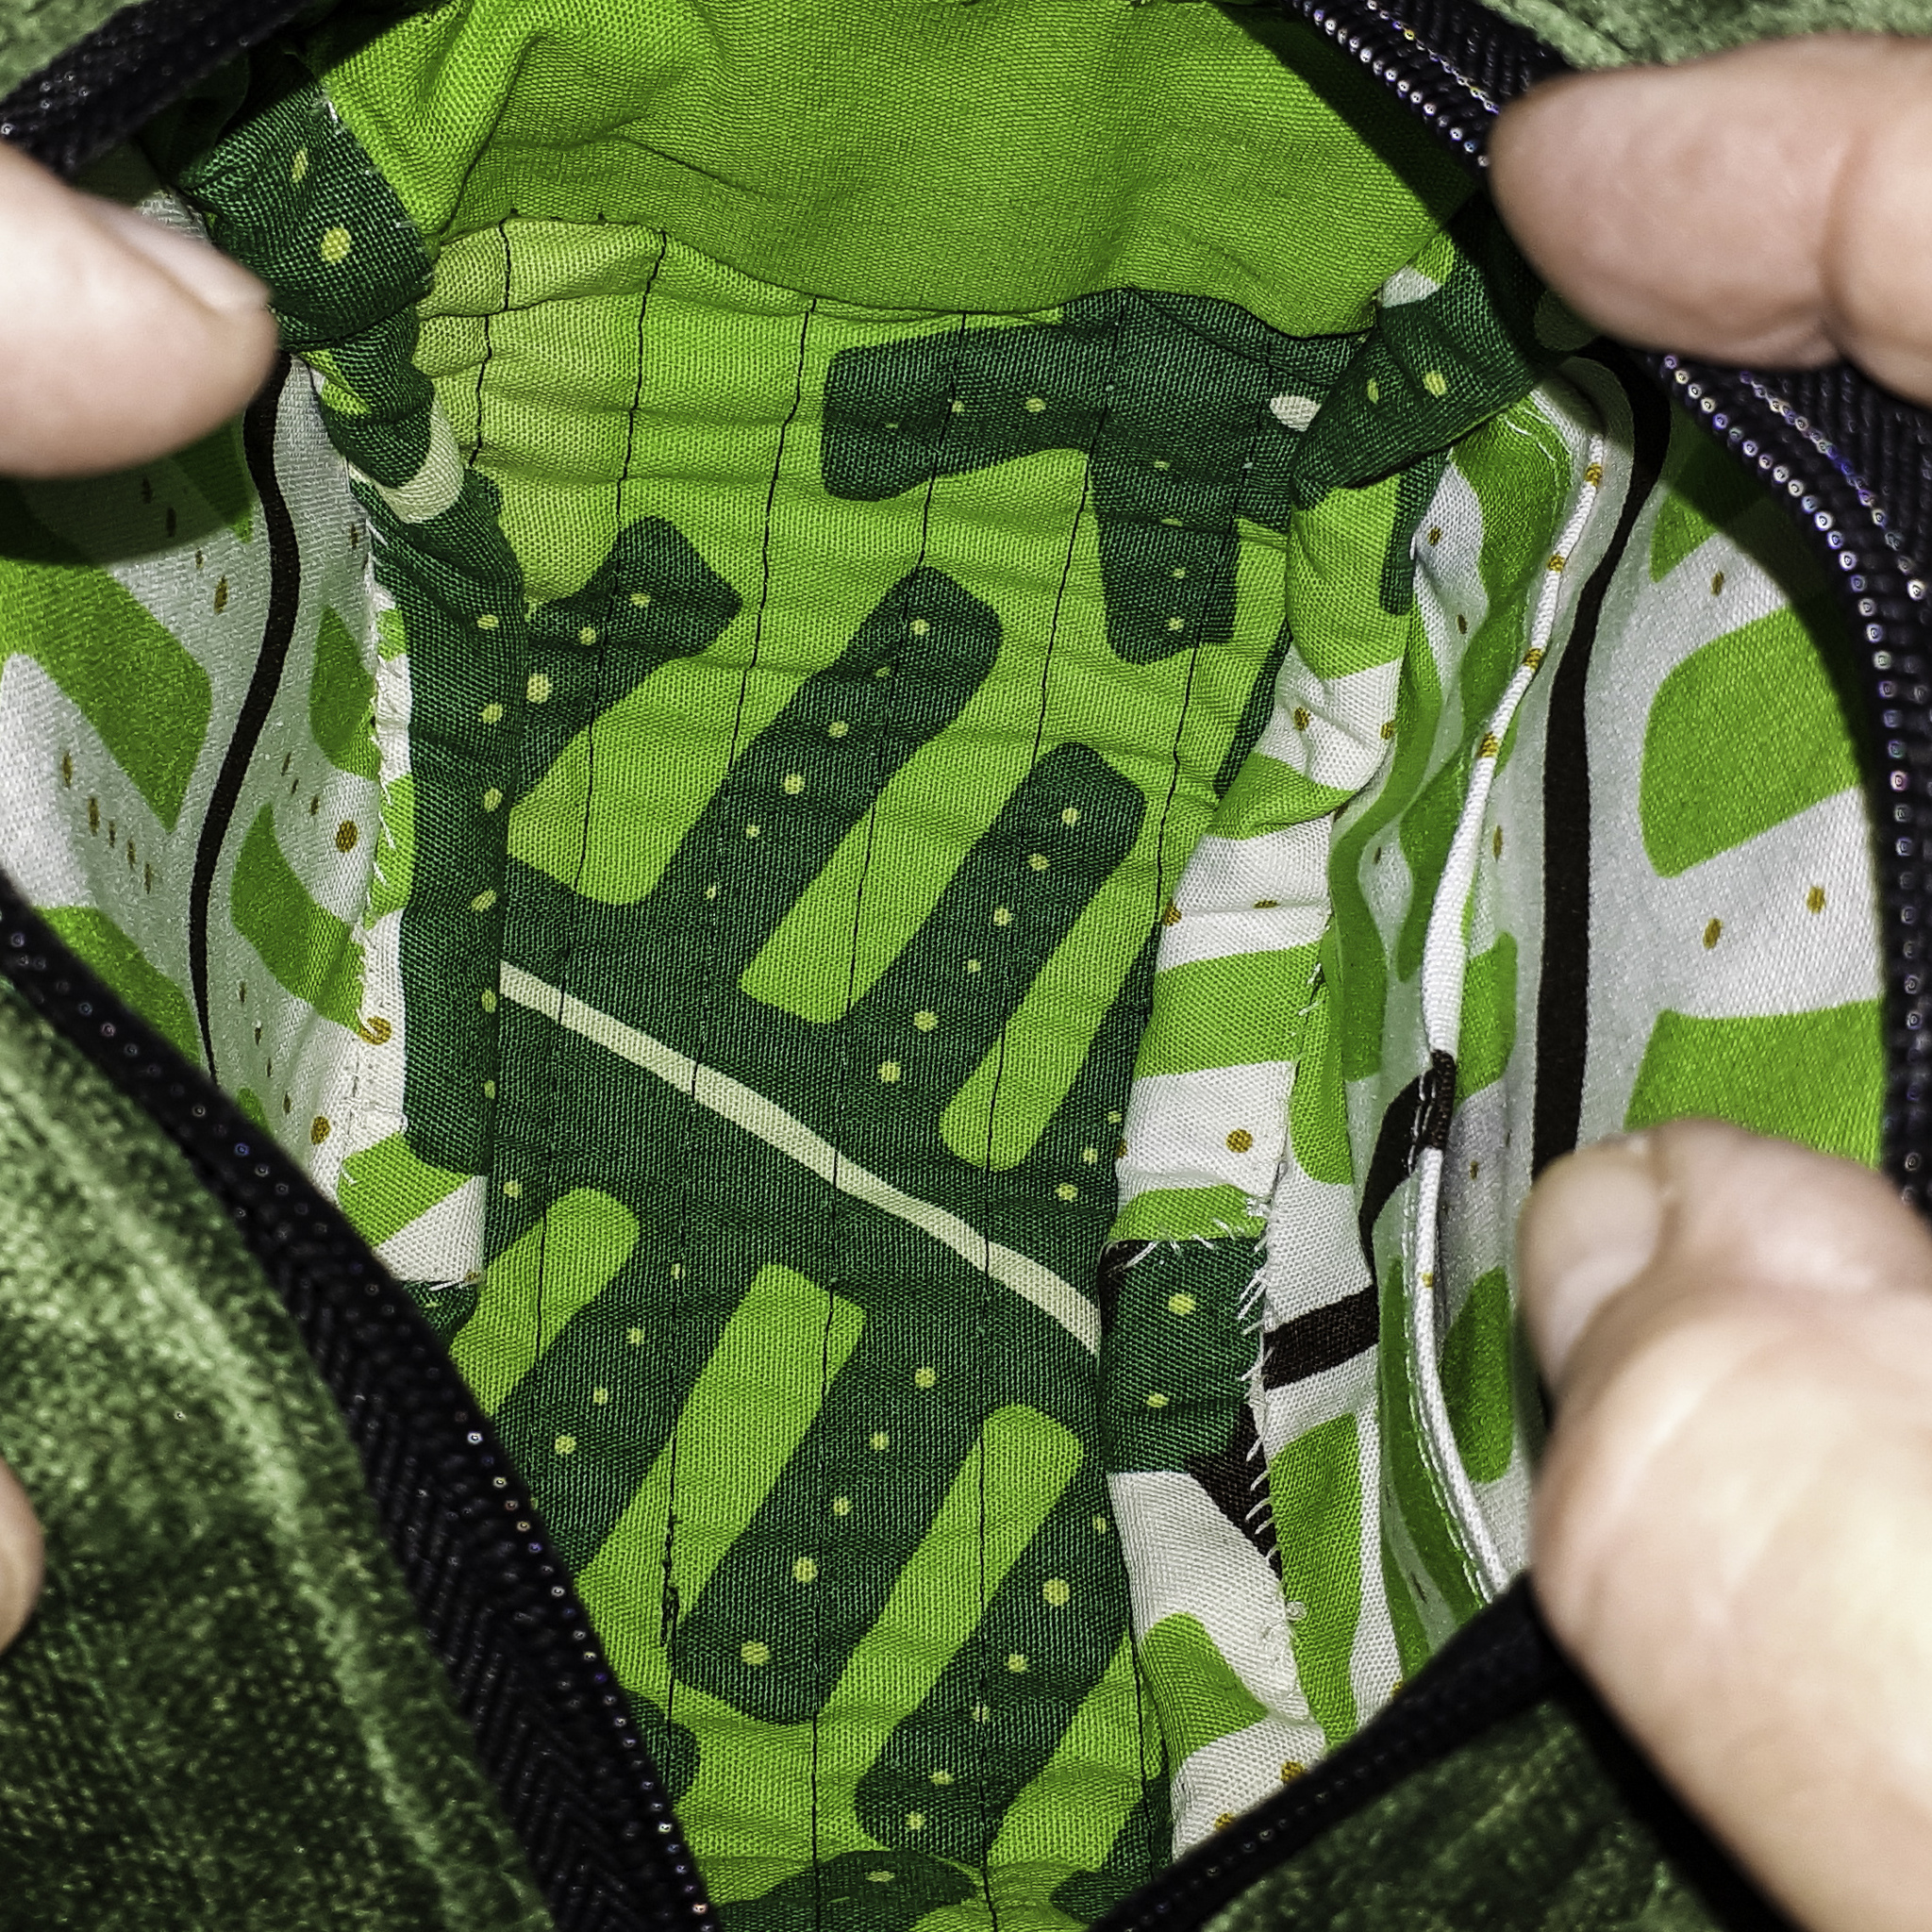 Väskans insida ljusgrön med mörkare breda gröna ränder